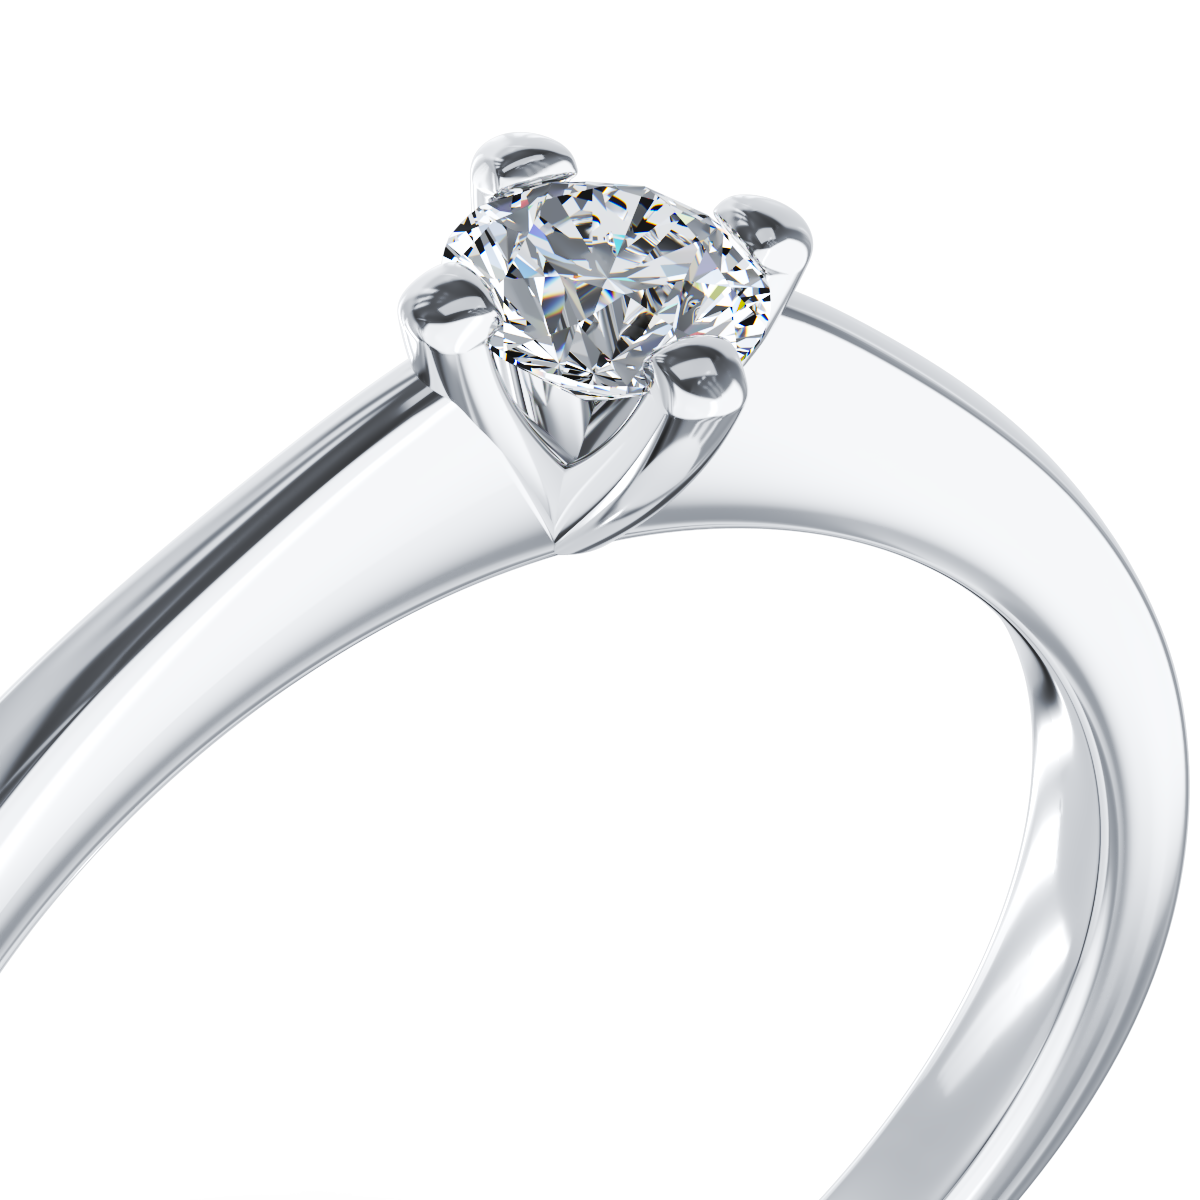 Poze Inel de logodna din aur alb de 18K cu un diamant solitaire de 0.2ct